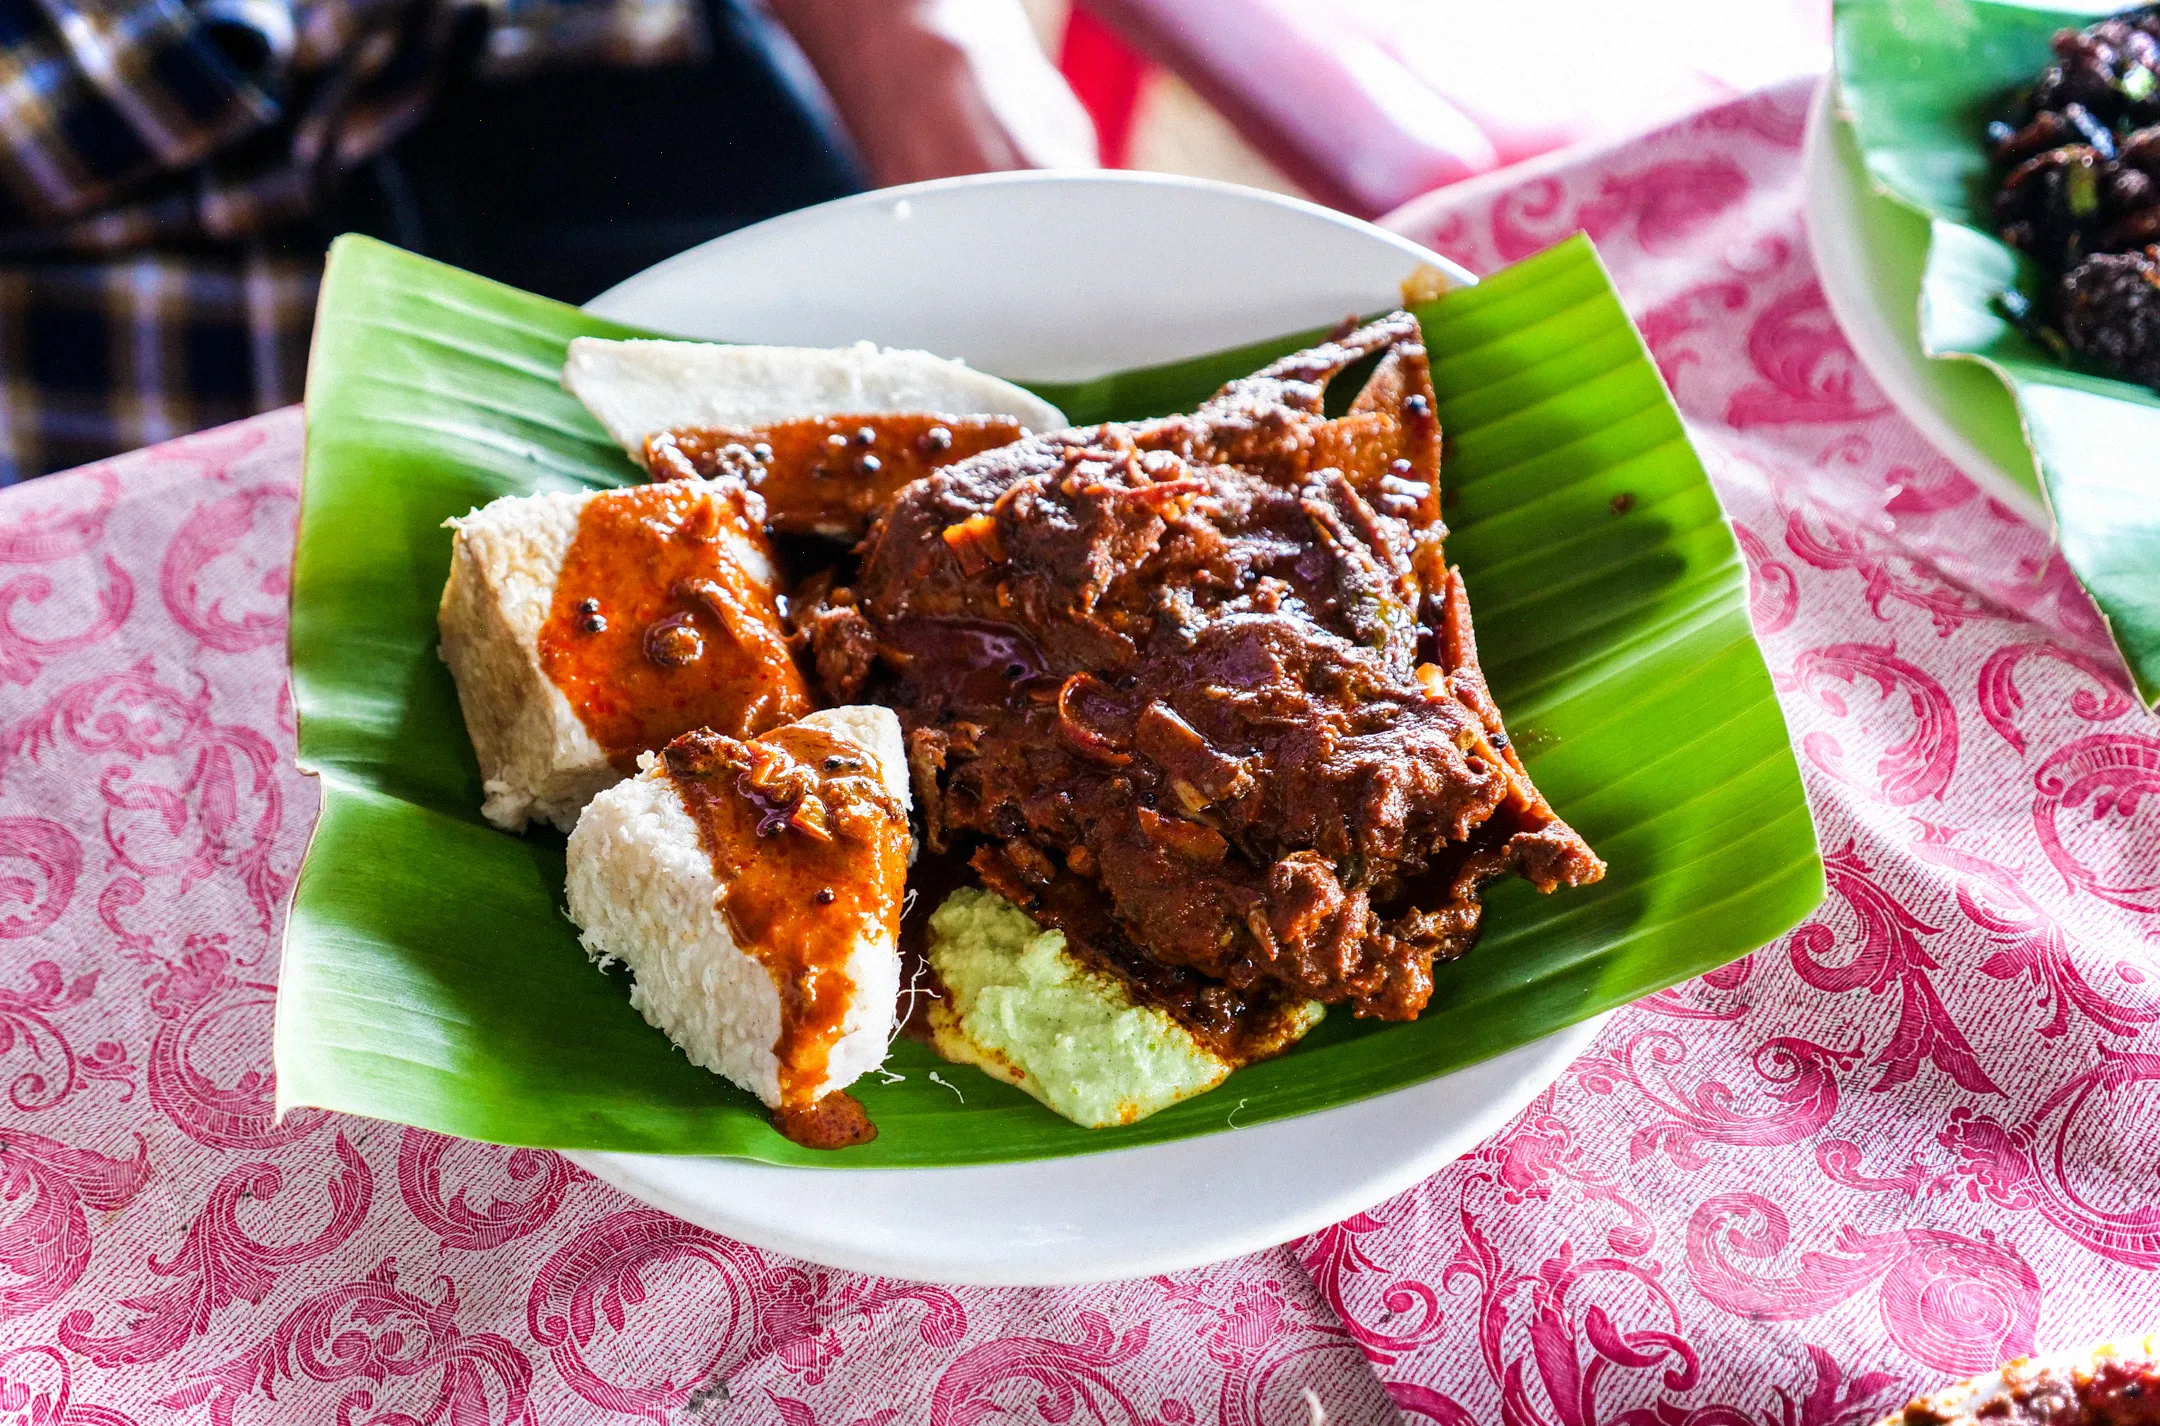 La tapioca es el carbohidrato que suele acompañar al curry de pescado rojo intenso al estilo de Kerala.